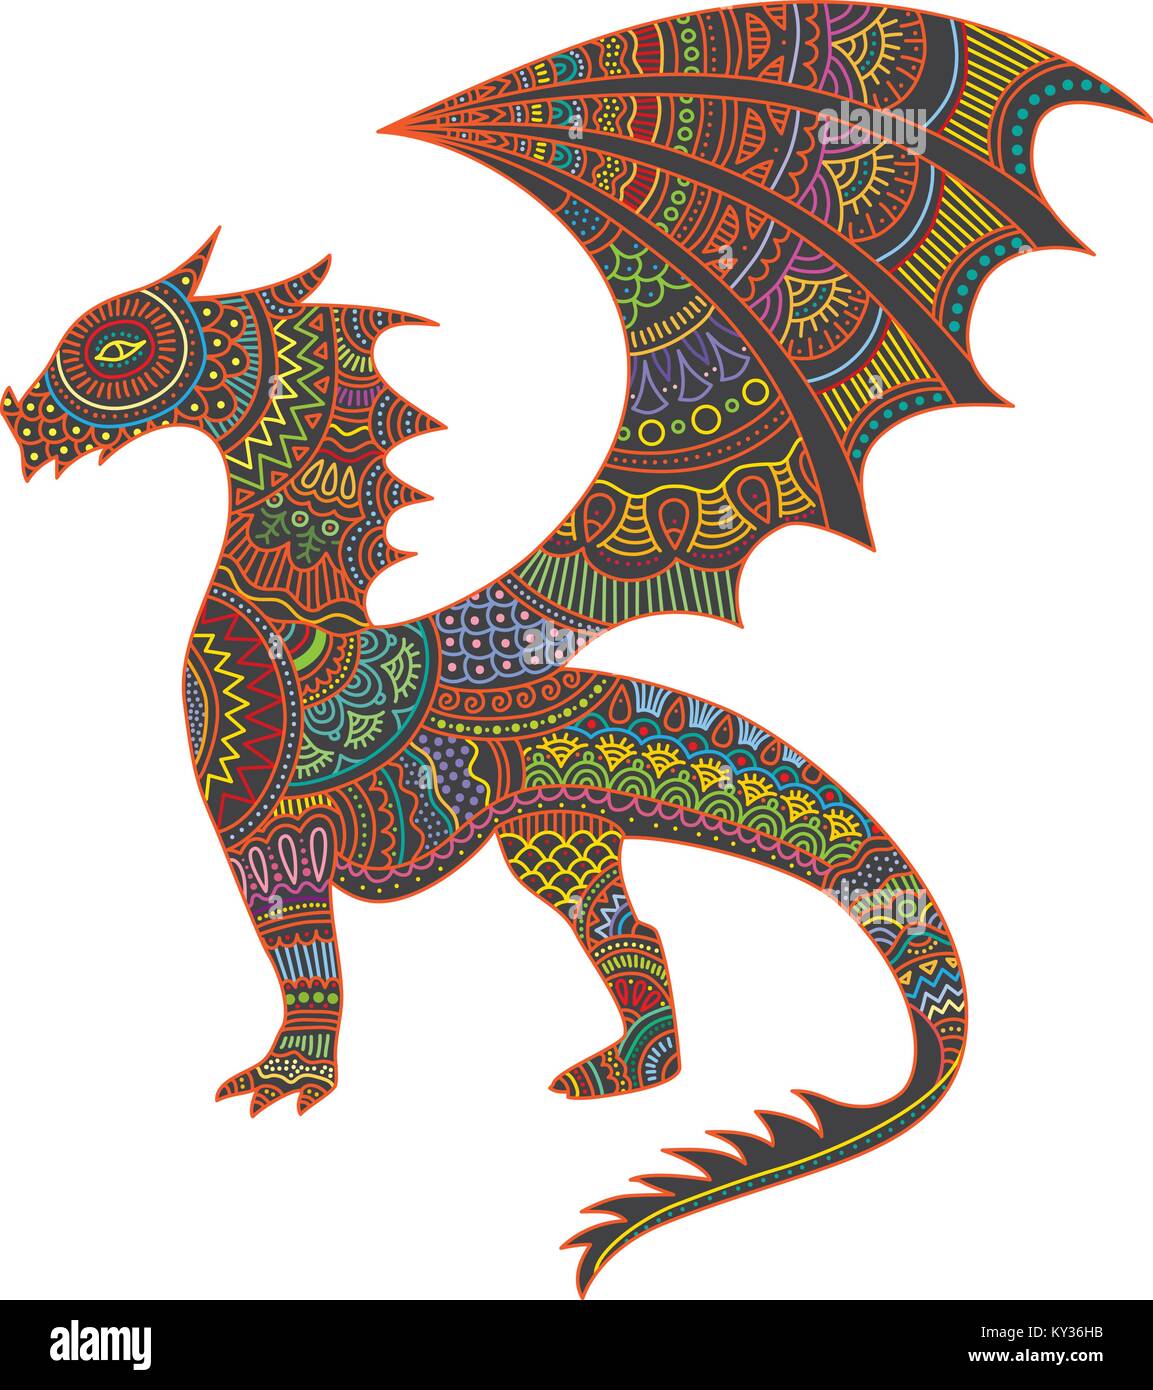 Creature mistiche dragon illustrazione vettoriale con colorati el alebrije messicano modello di stile Illustrazione Vettoriale